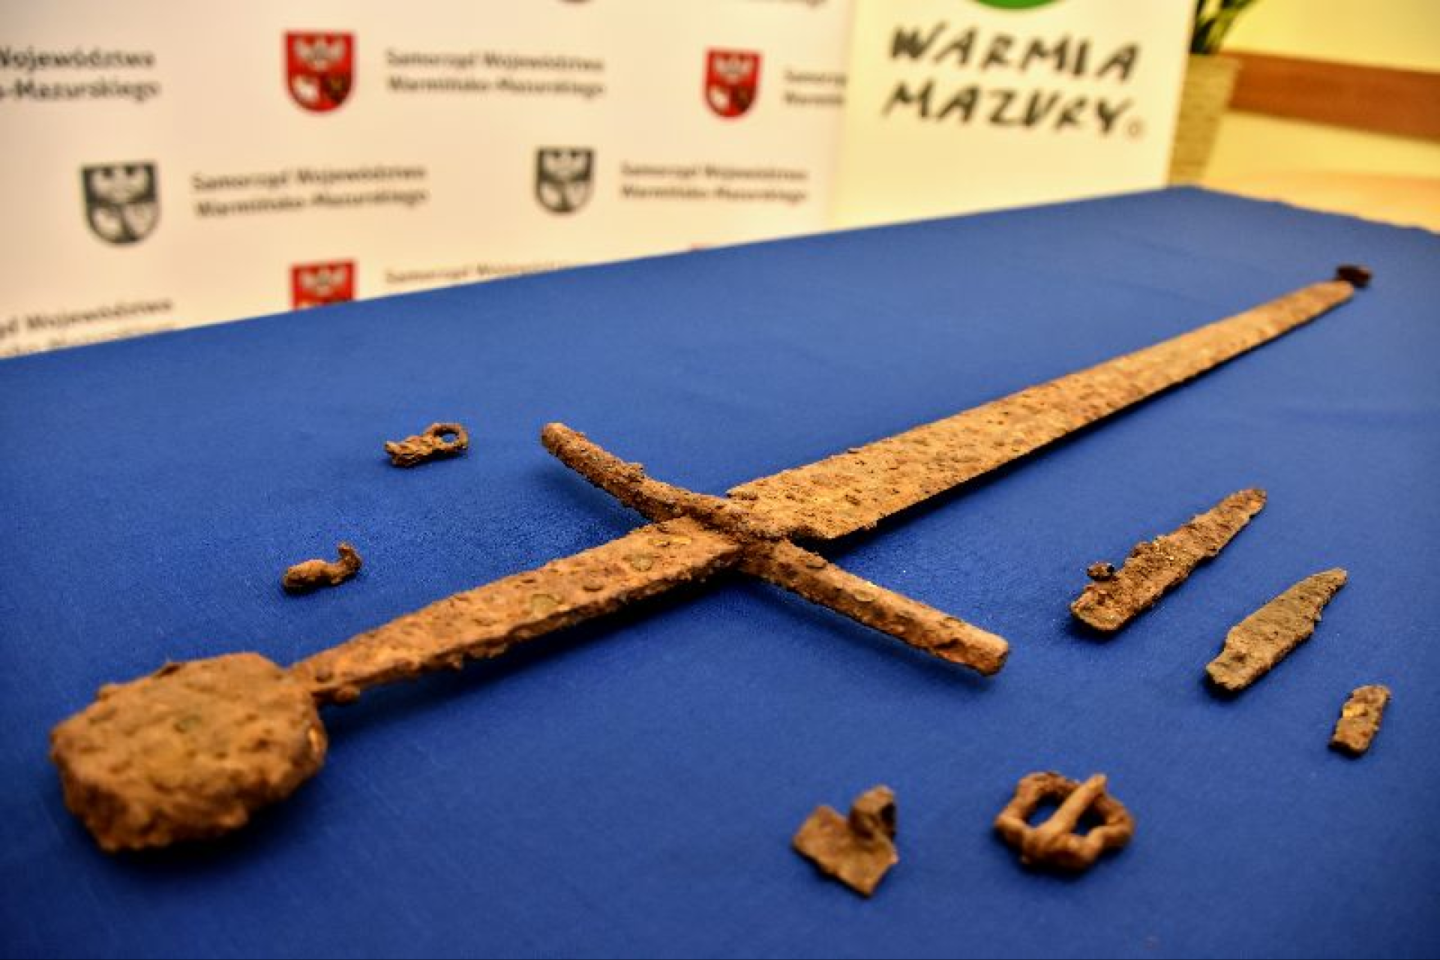   Kalavijas buvo rastas netoli Olštyno, šiaurės Lenkijoje, šalia metalinių makštų liekanų, diržo ir dviejų peilių, kurie turėjo būti pritvirtinti prie diržo.<br>warmia.mazury.pl nuotr.